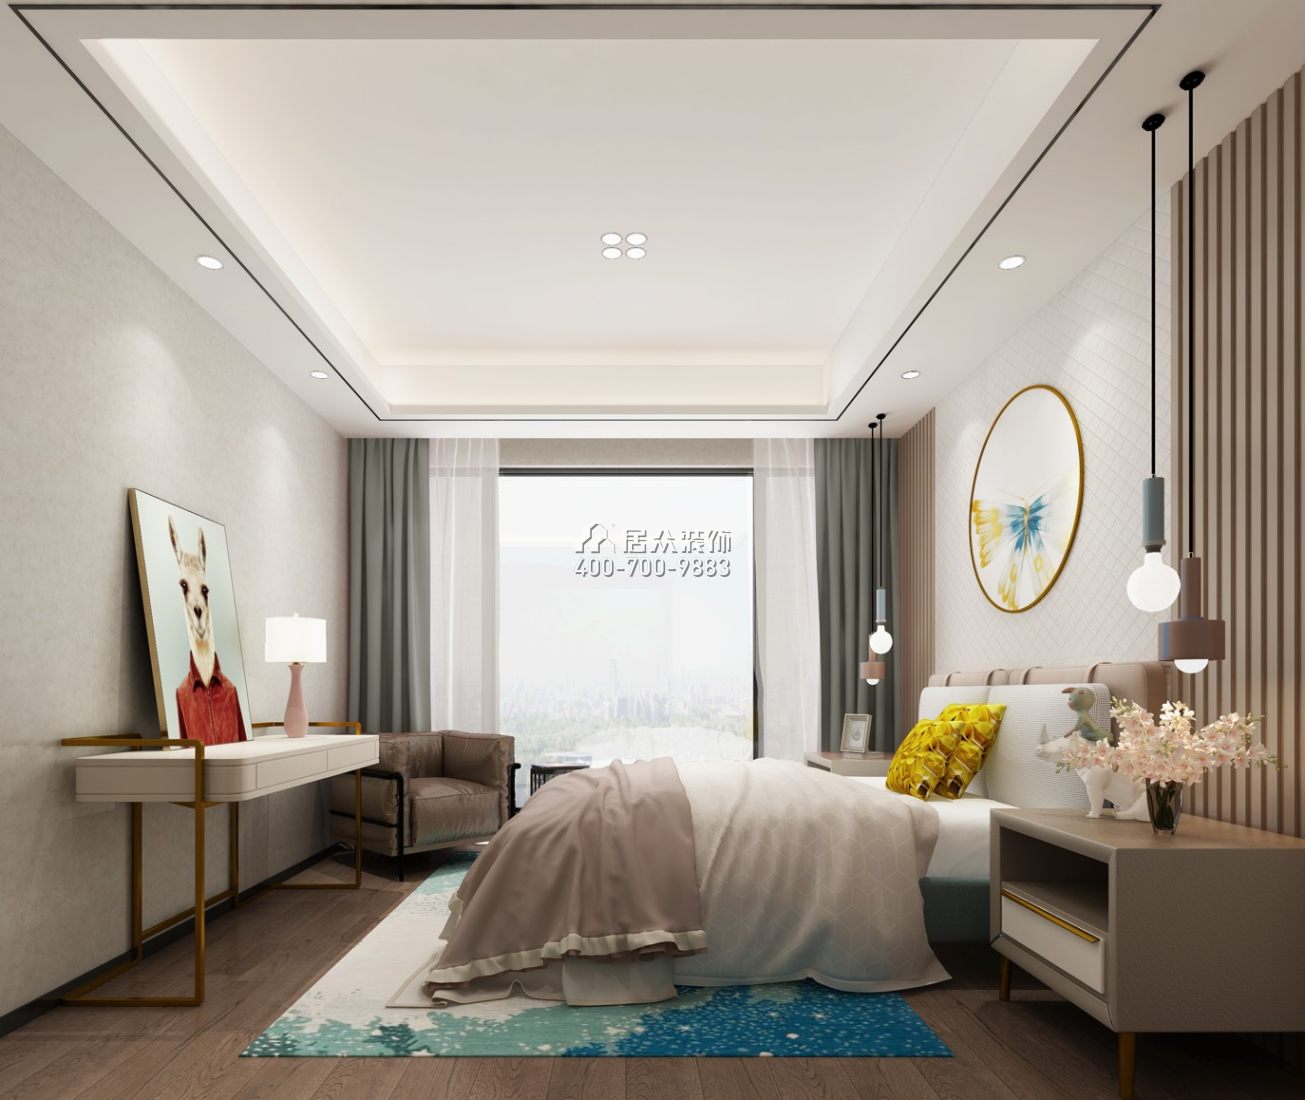 卓越维港北区230平方米现代简约风格平层户型卧室装修效果图